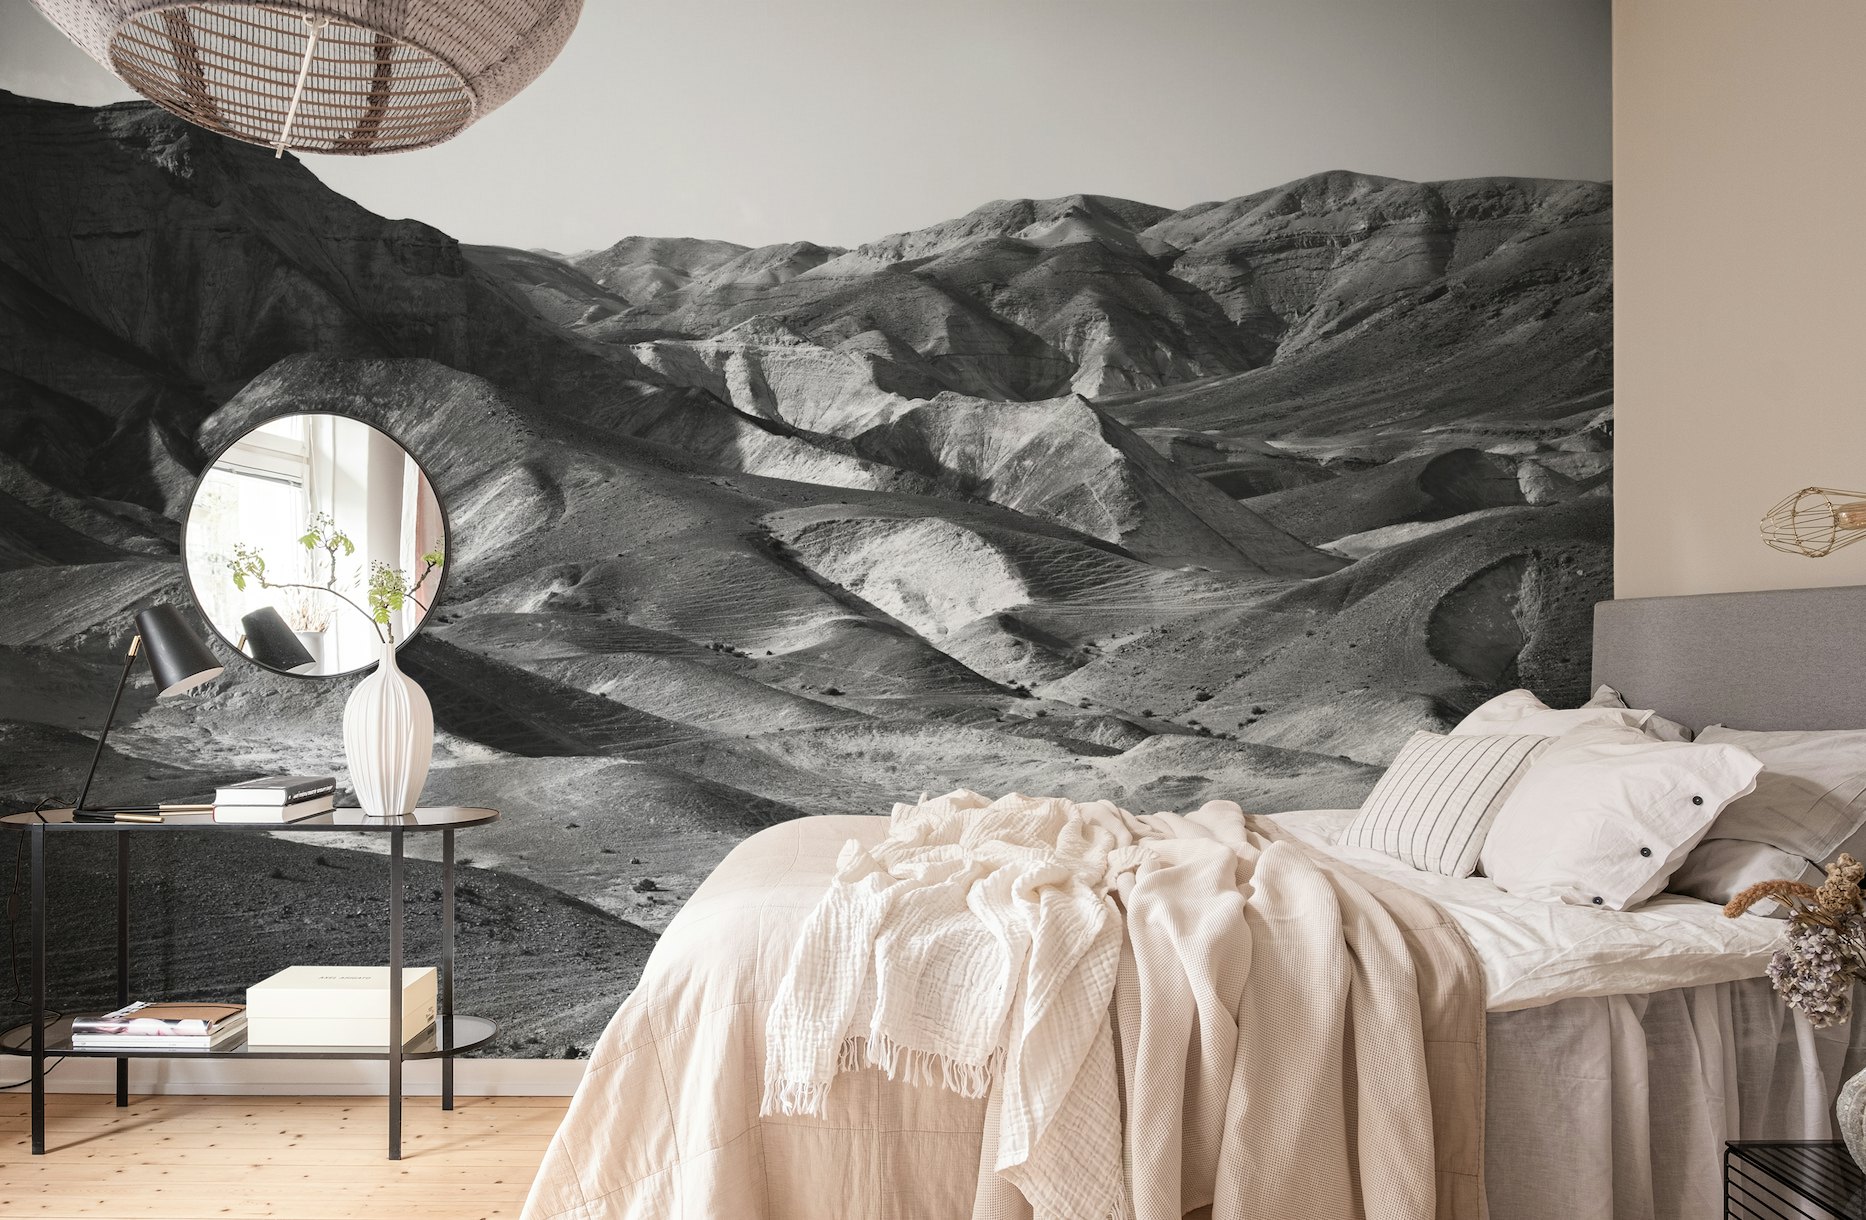 Mountains of the Judean Desert 4 wallpaper